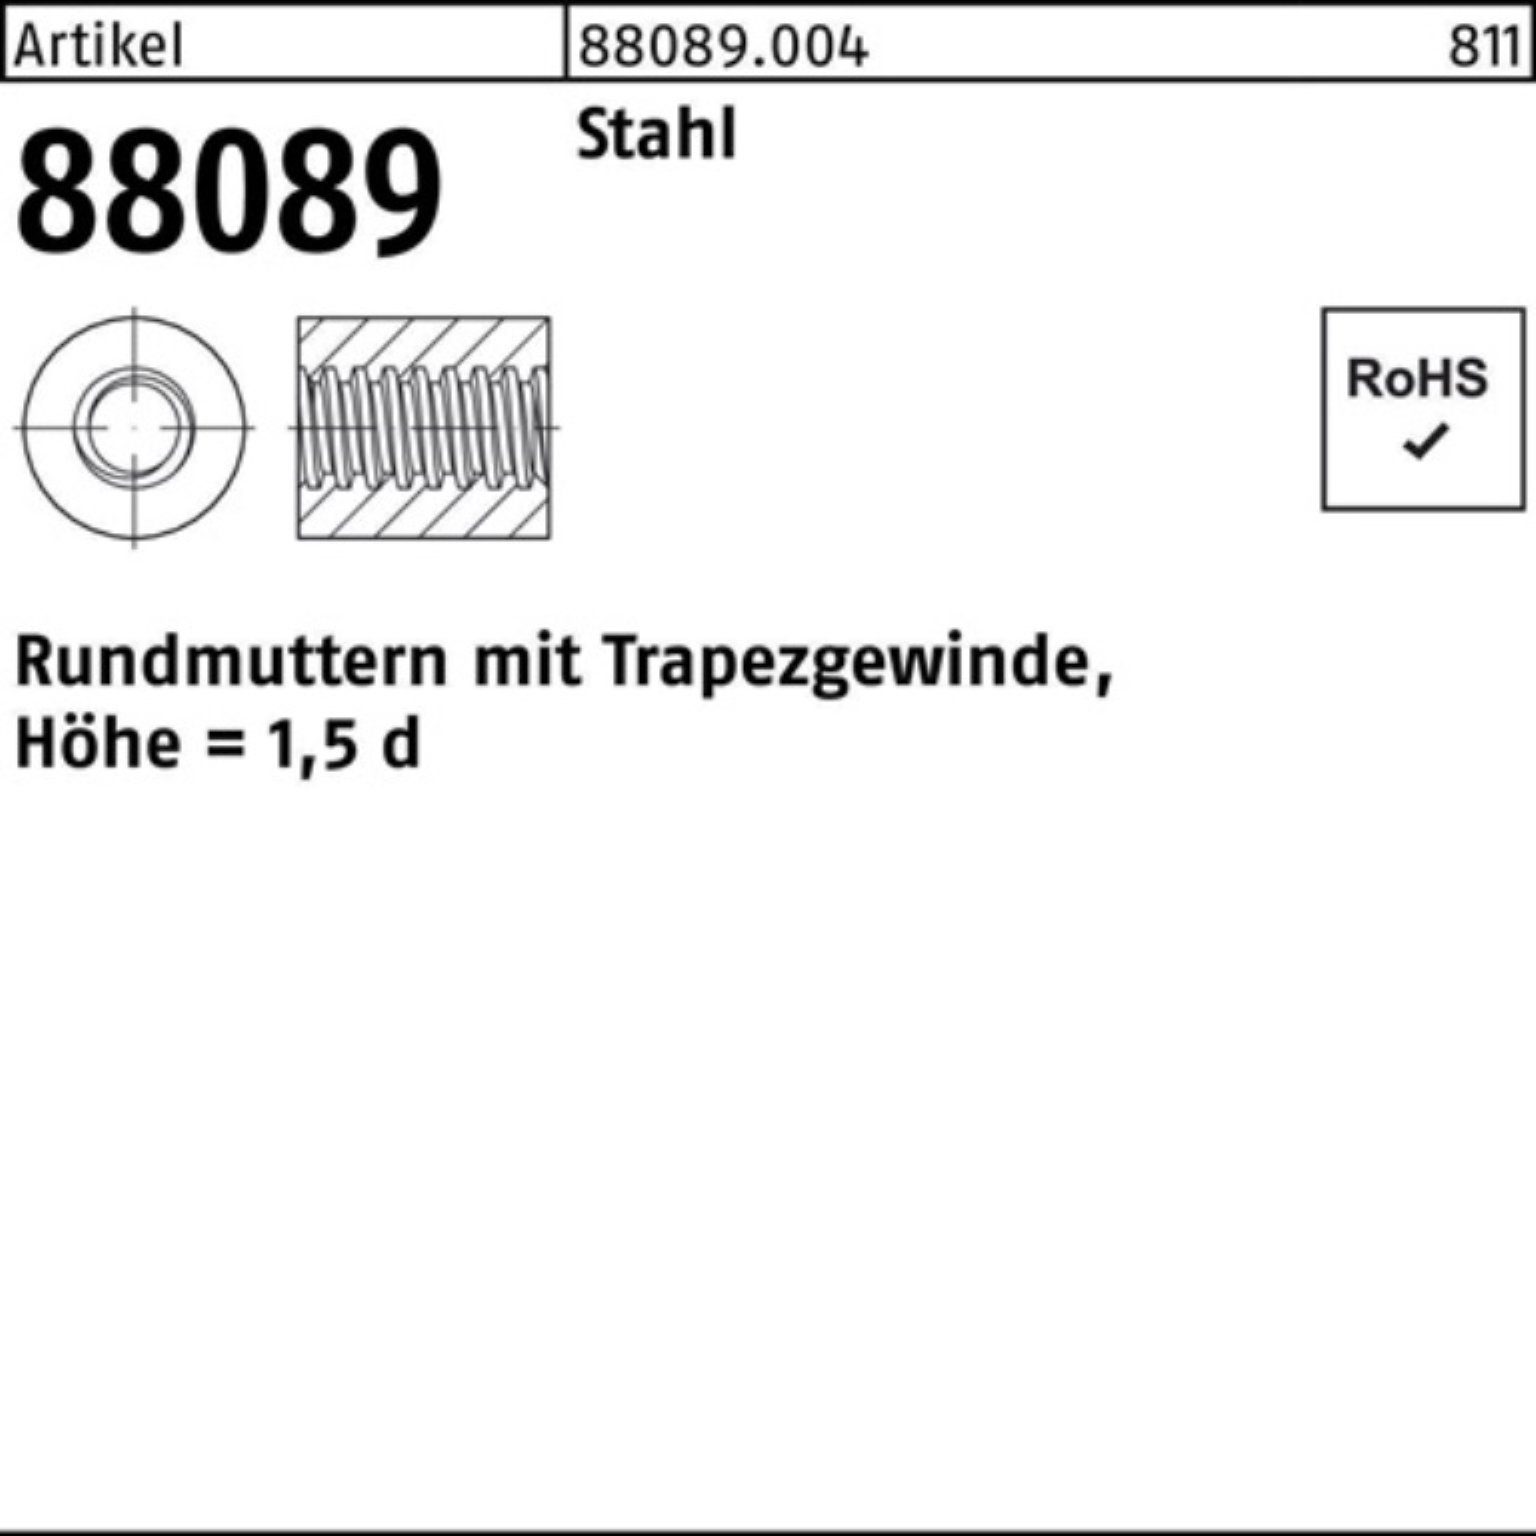 Rundmutter 88089 Rundmutter Stahl Höhe=1 TR Pack Trapezgewinde 7 R Reyher 44x -75 100er